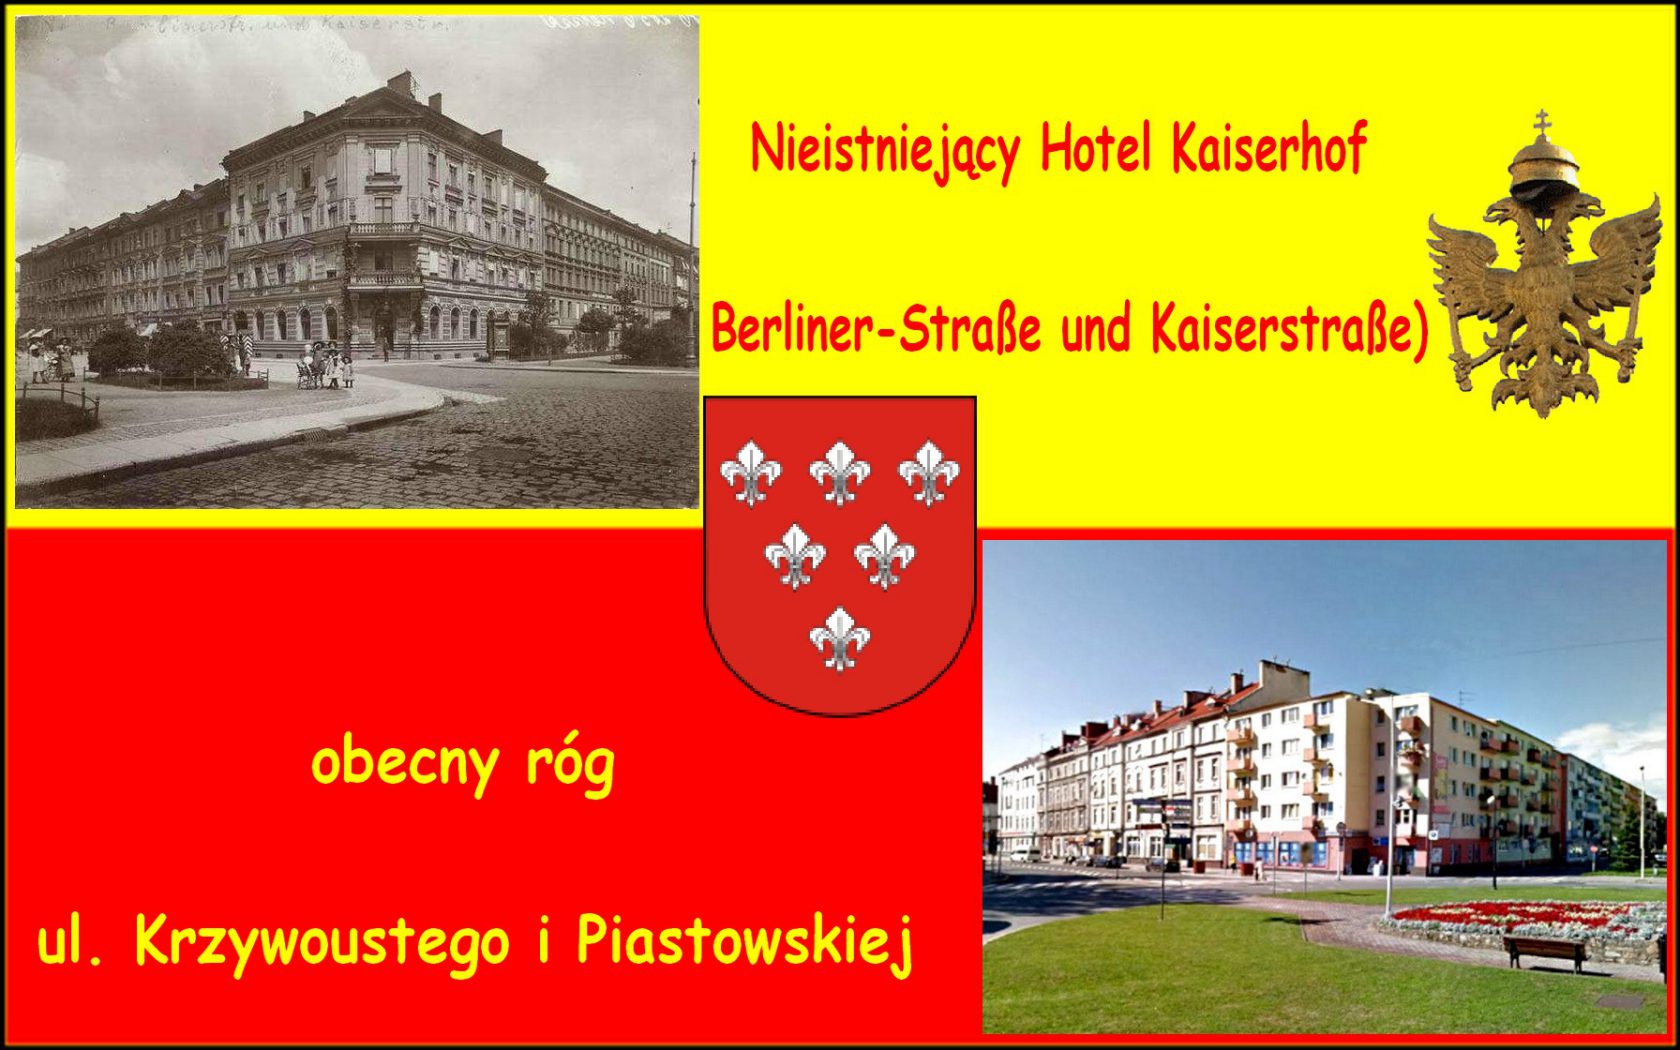 Nysa w porównaniach - Nysa Neisse - Nieistniejacy Hotel Kaikserhof, obecnie rog ulic Krzywoustego i Piastowskiej.jpg